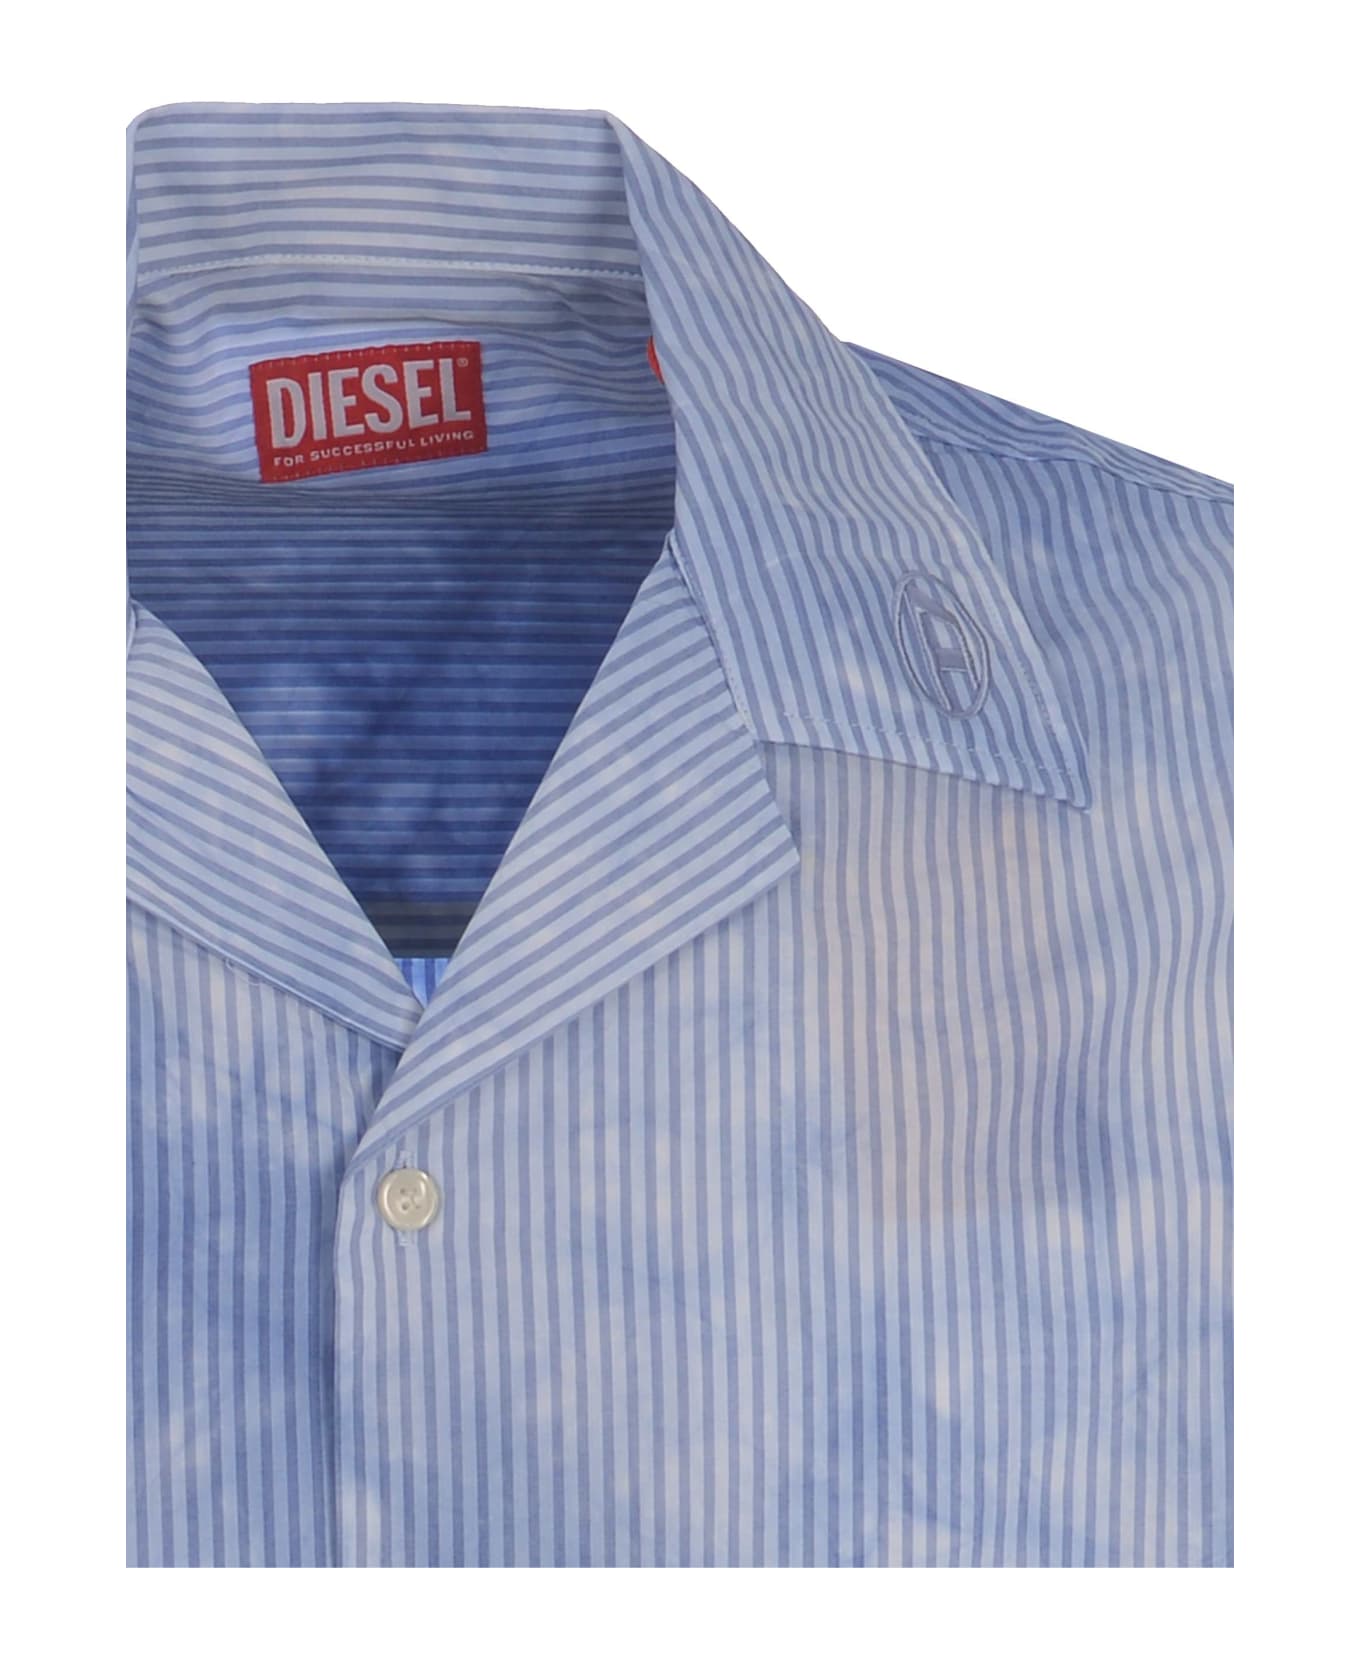 Diesel Bowling Shirt Diesel "trucker" Made Of Poplin - Celeste シャツ